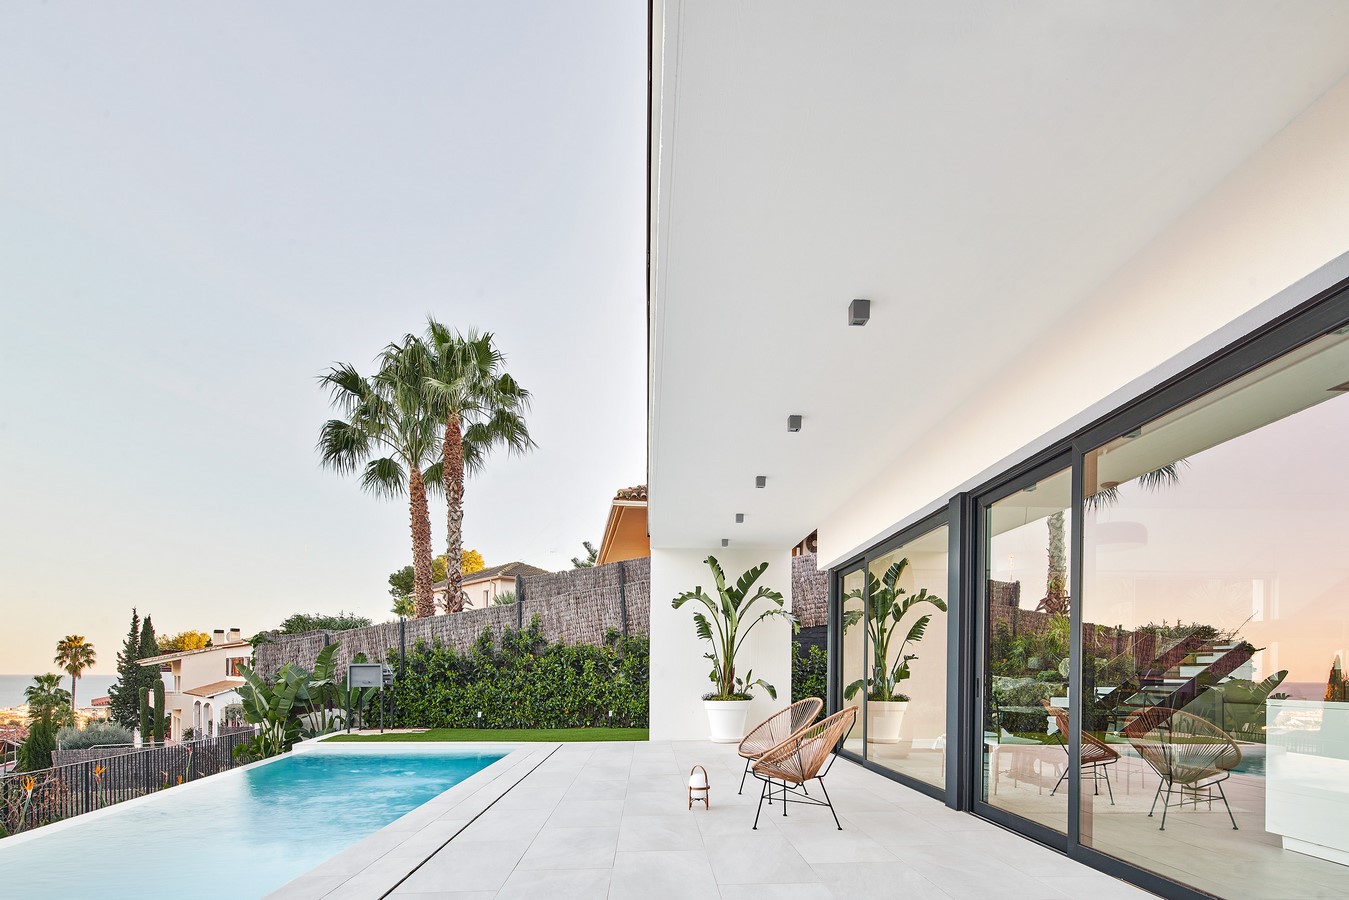 Casa PR By GUILLEM CARRERA arquitecte - Sheet4